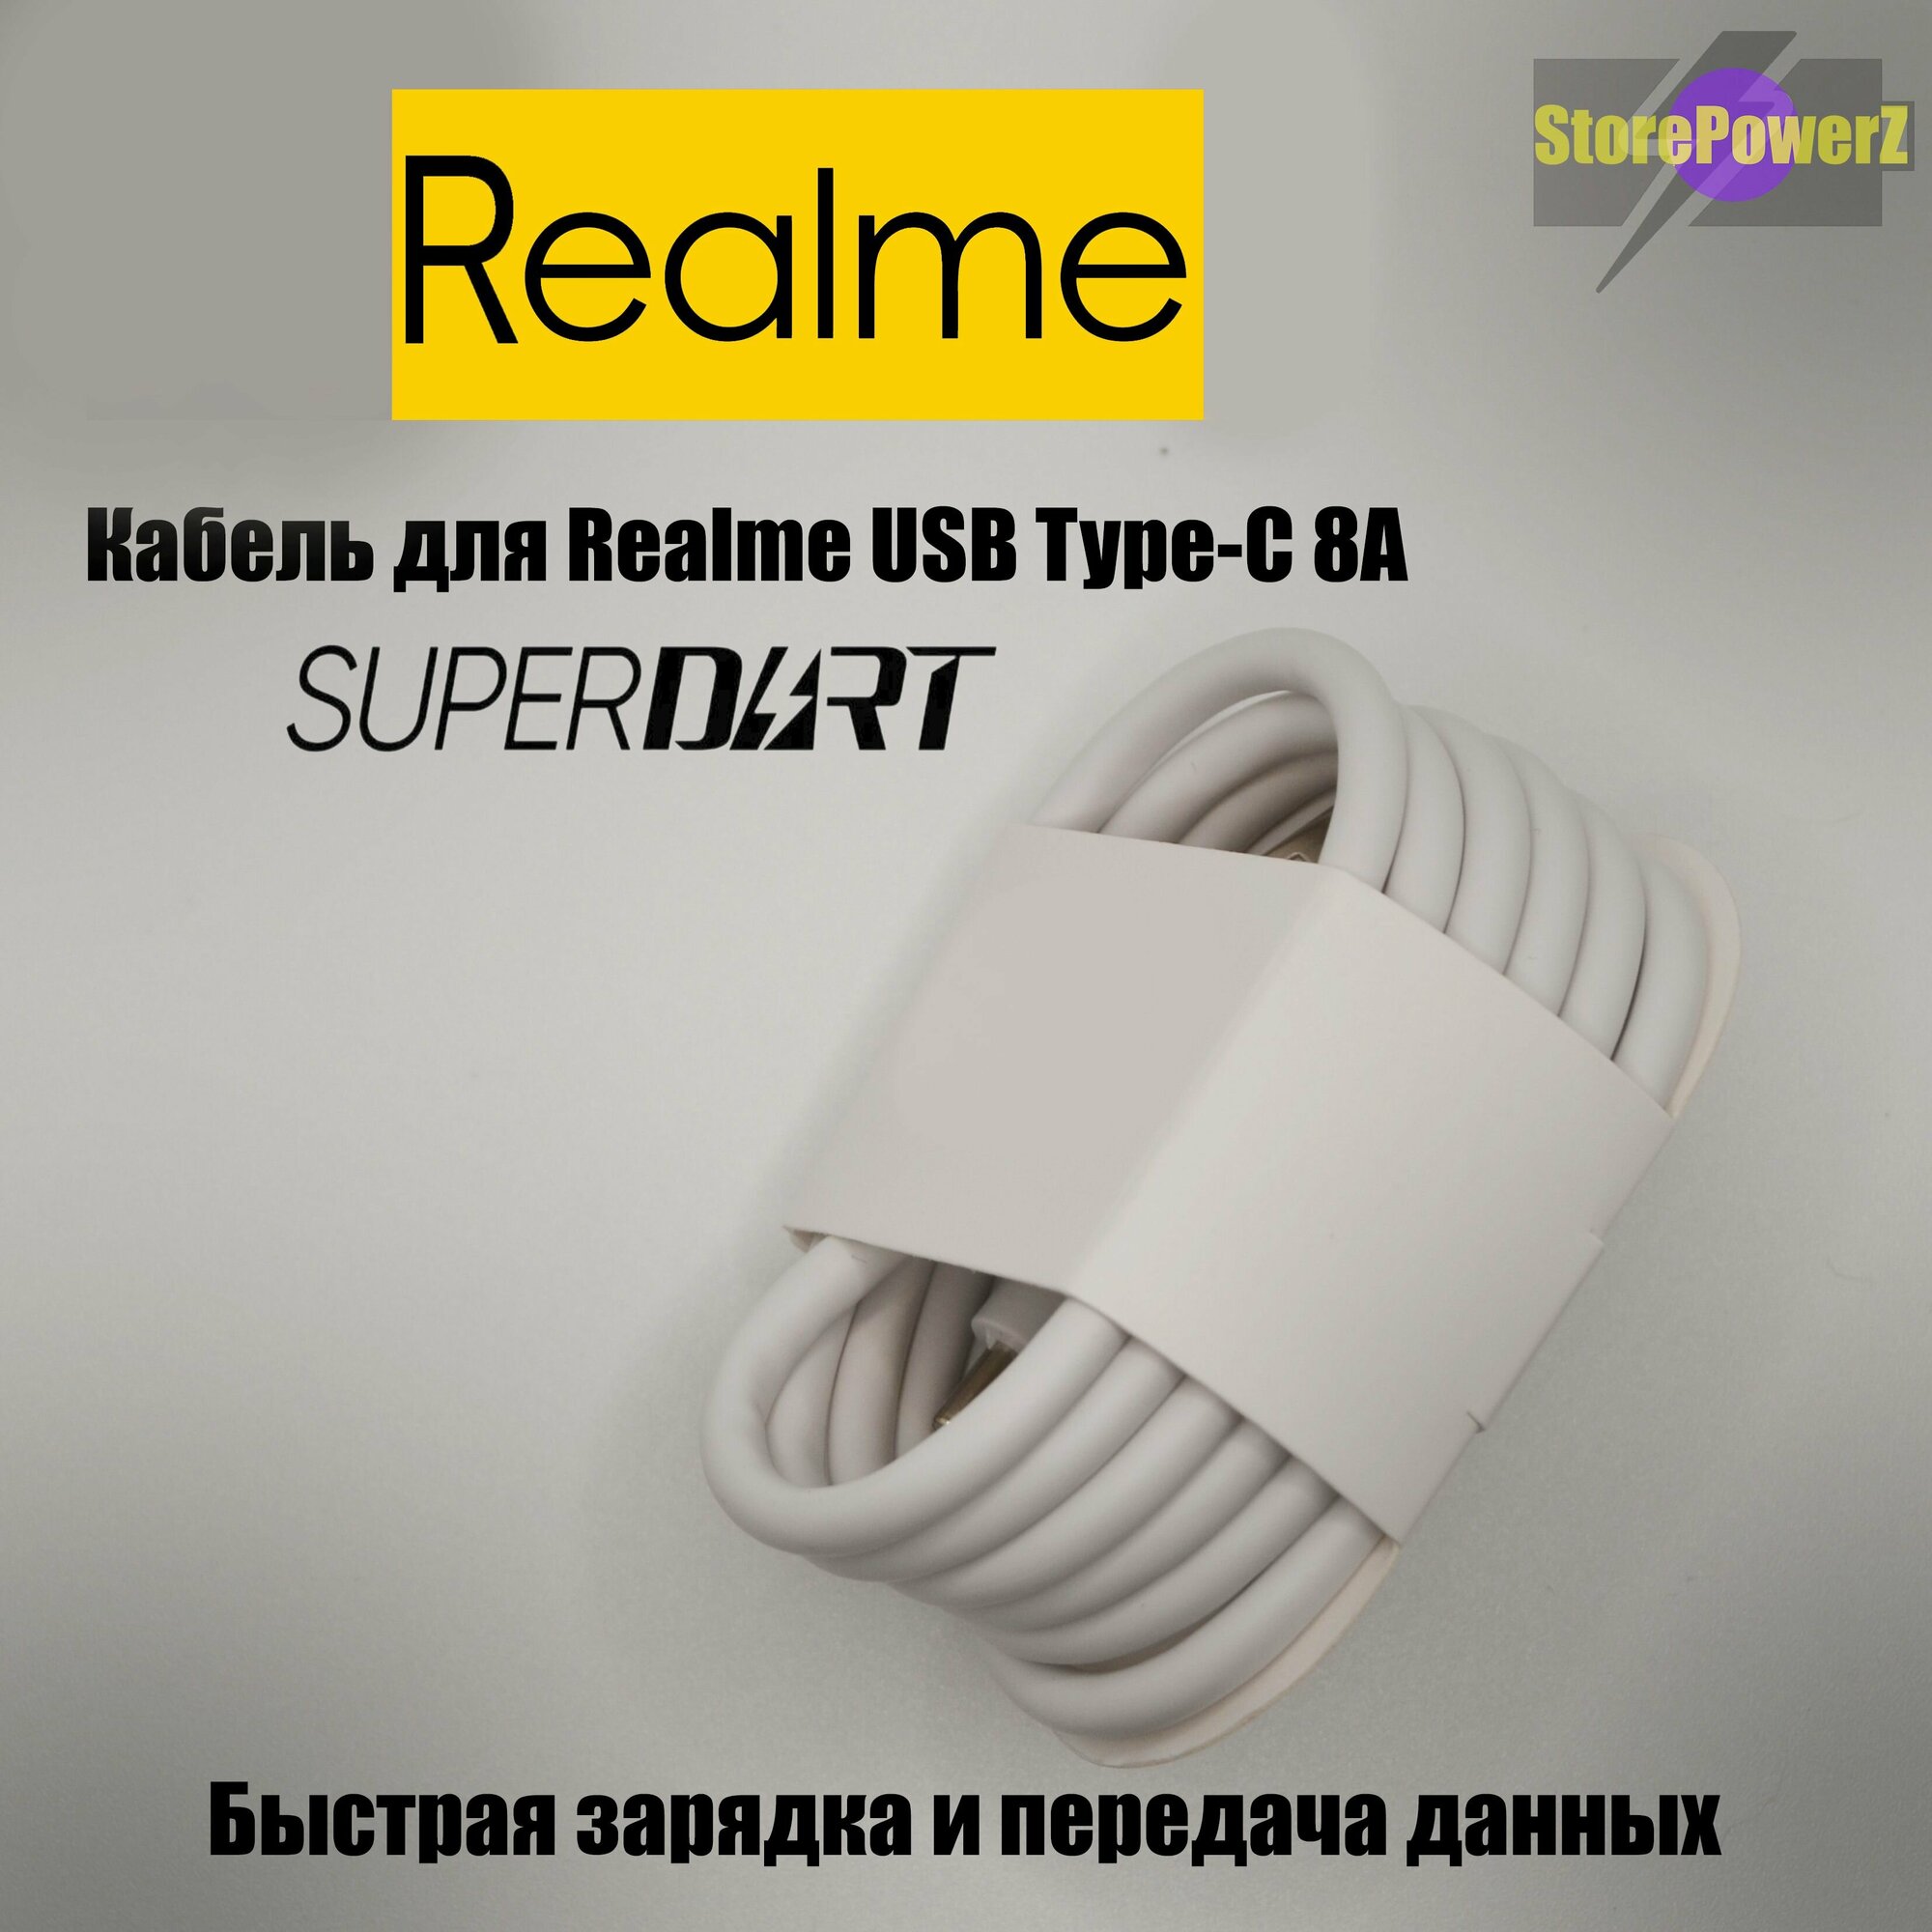 Кабель для зарядки USB Type-C 8A Realme (SuperDart Charge) цвет: White